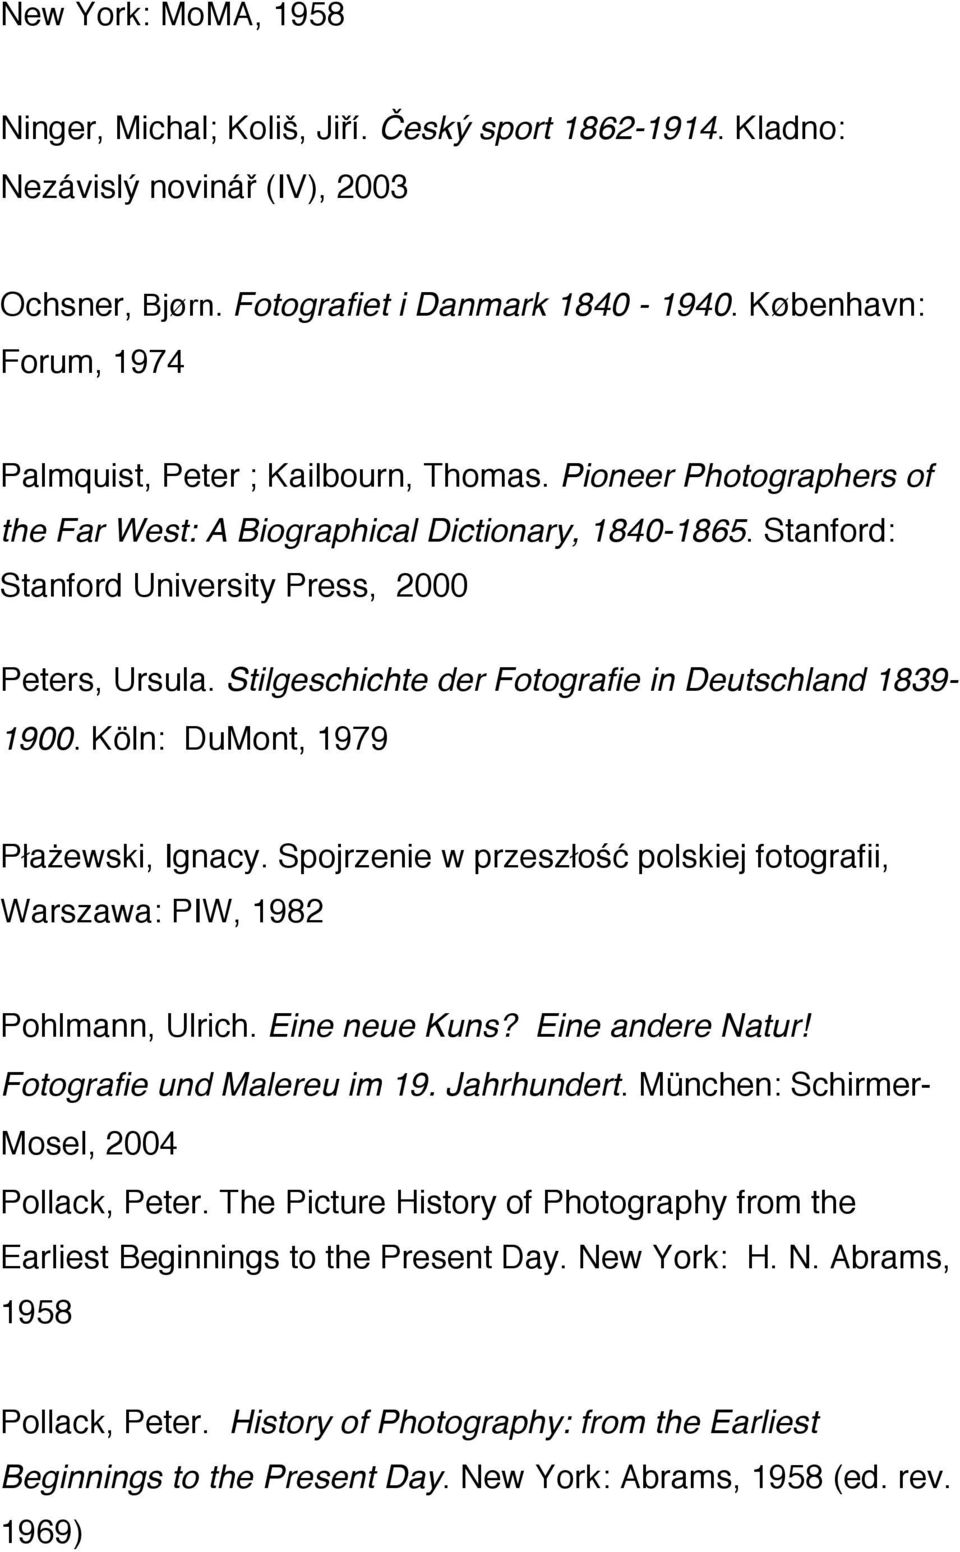 Stilgeschichte der Fotografie in Deutschland 1839-1900. Köln: DuMont, 1979 Płażewski, Ignacy. Spojrzenie w przeszłość polskiej fotografii, Warszawa: PIW, 1982 Pohlmann, Ulrich. Eine neue Kuns?